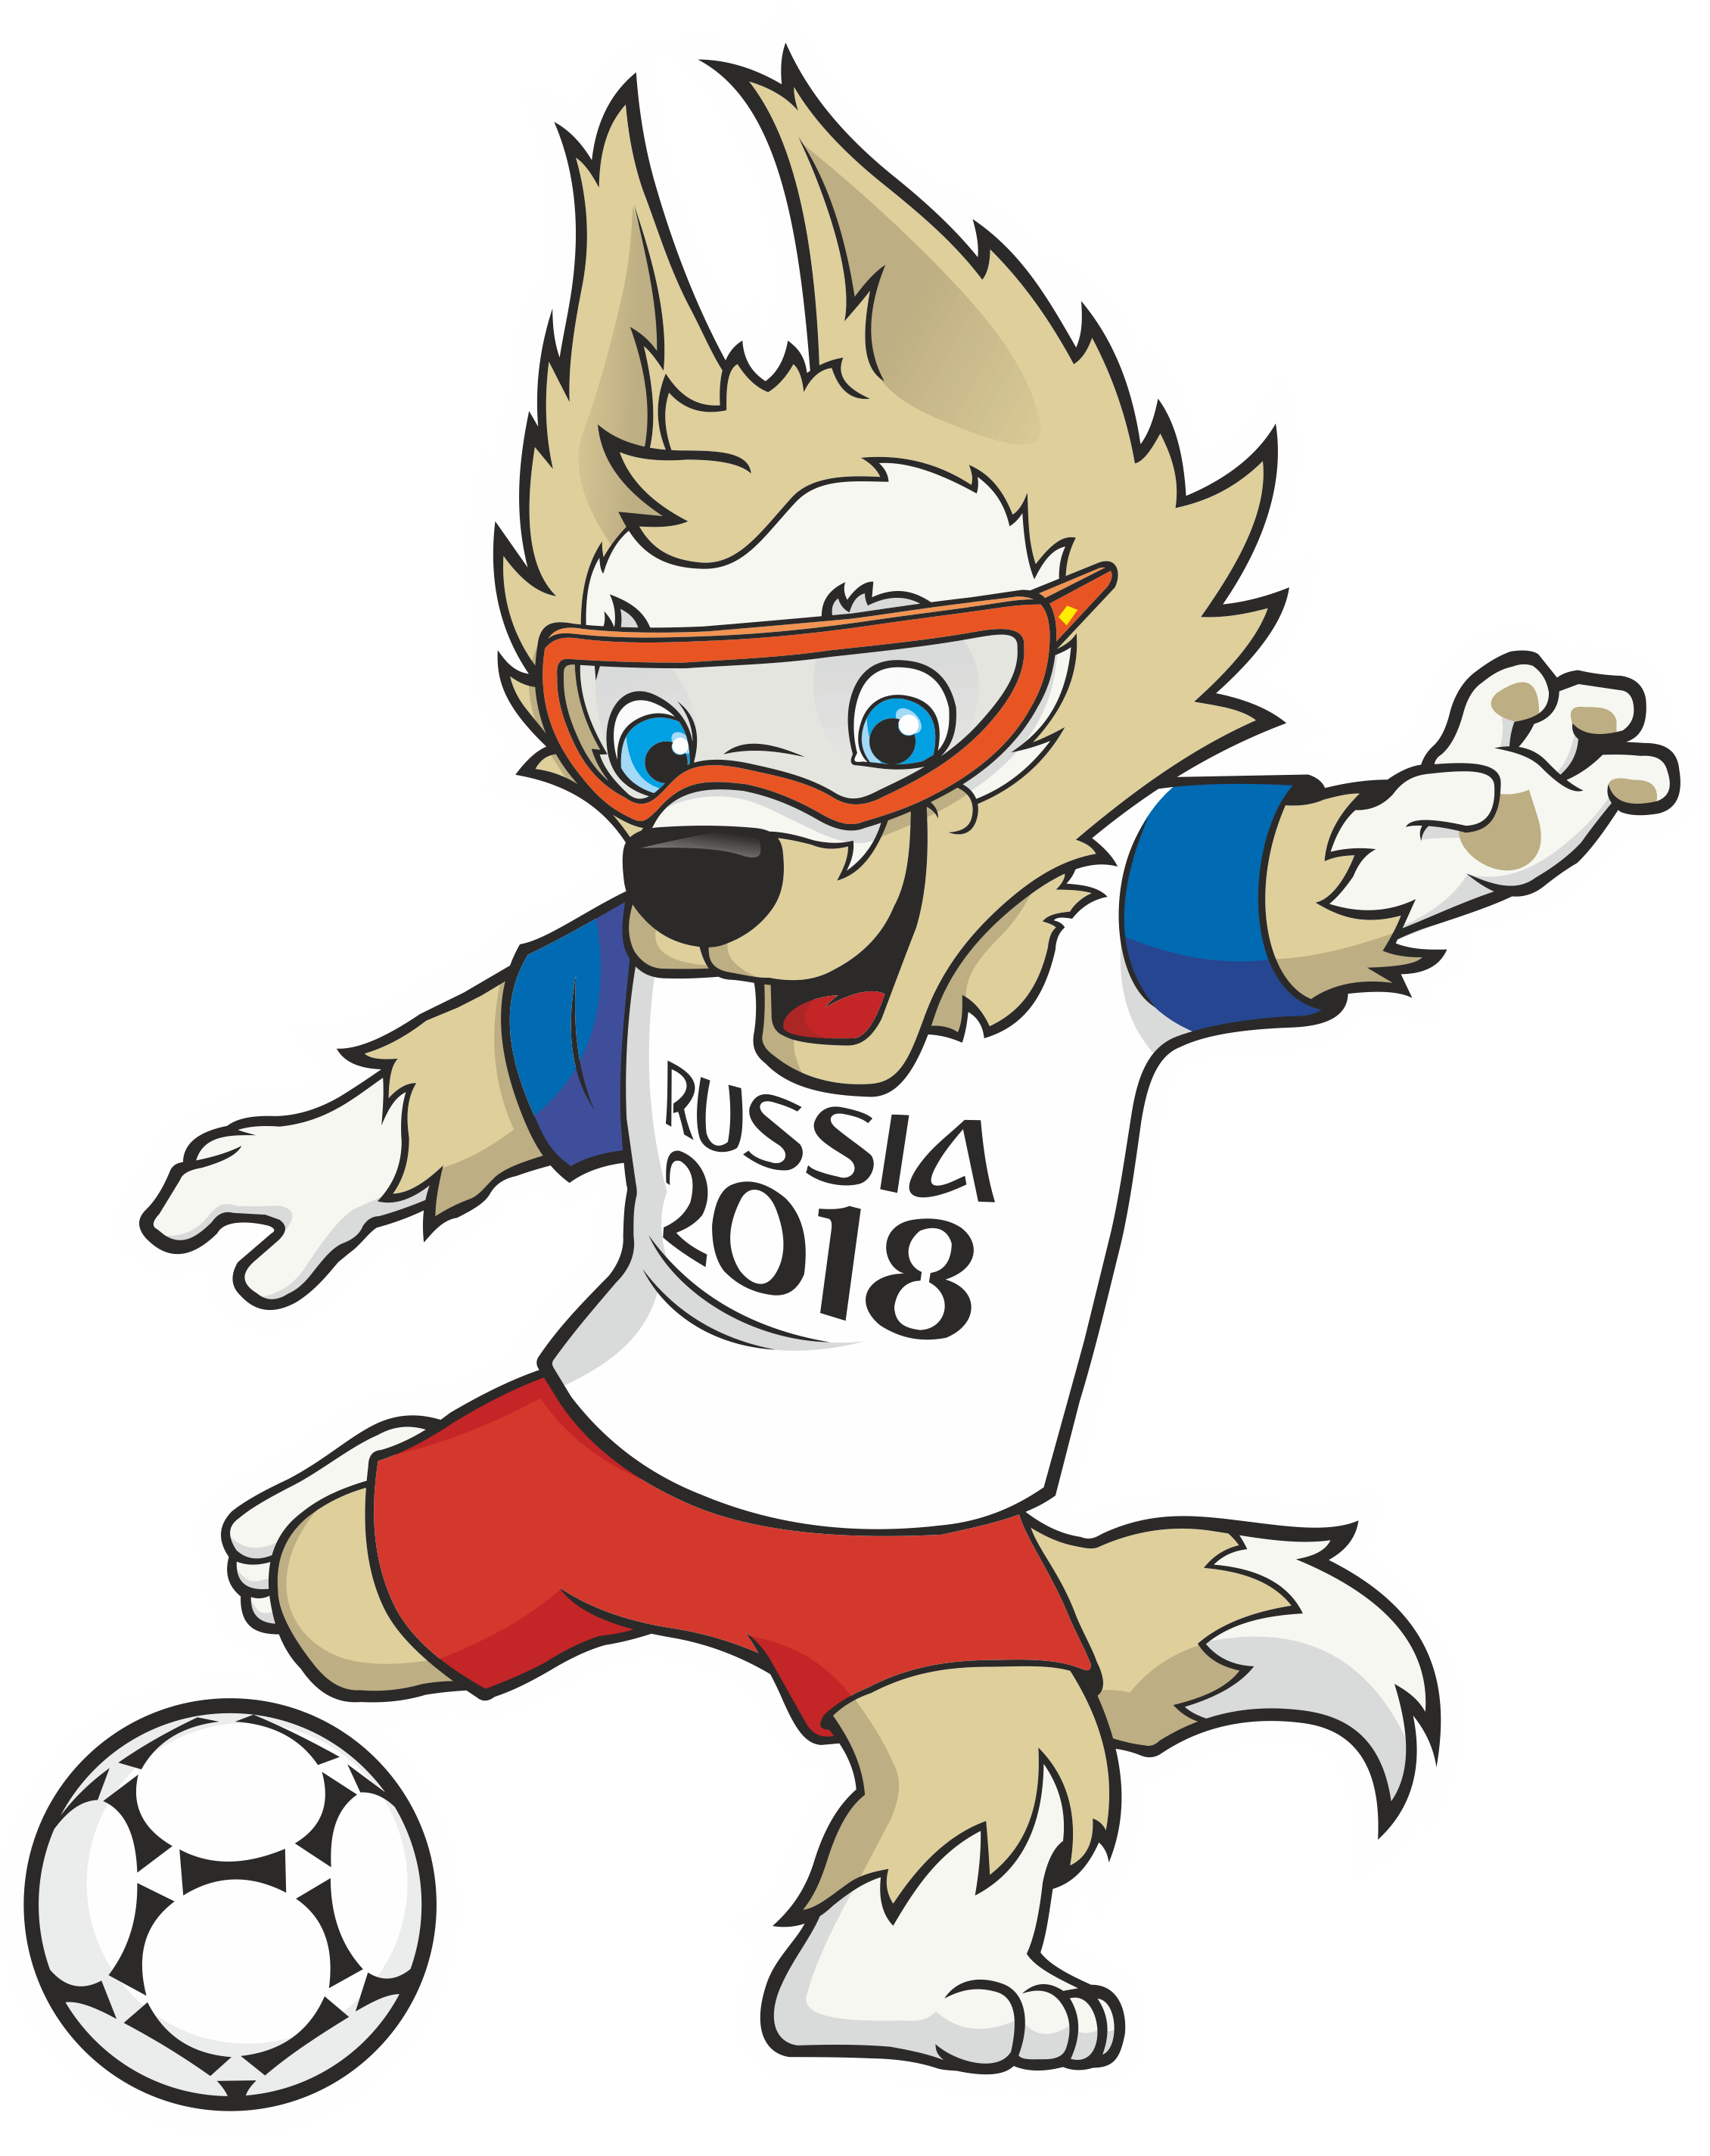 2018 FIFA World Cup Logo & Mascot.